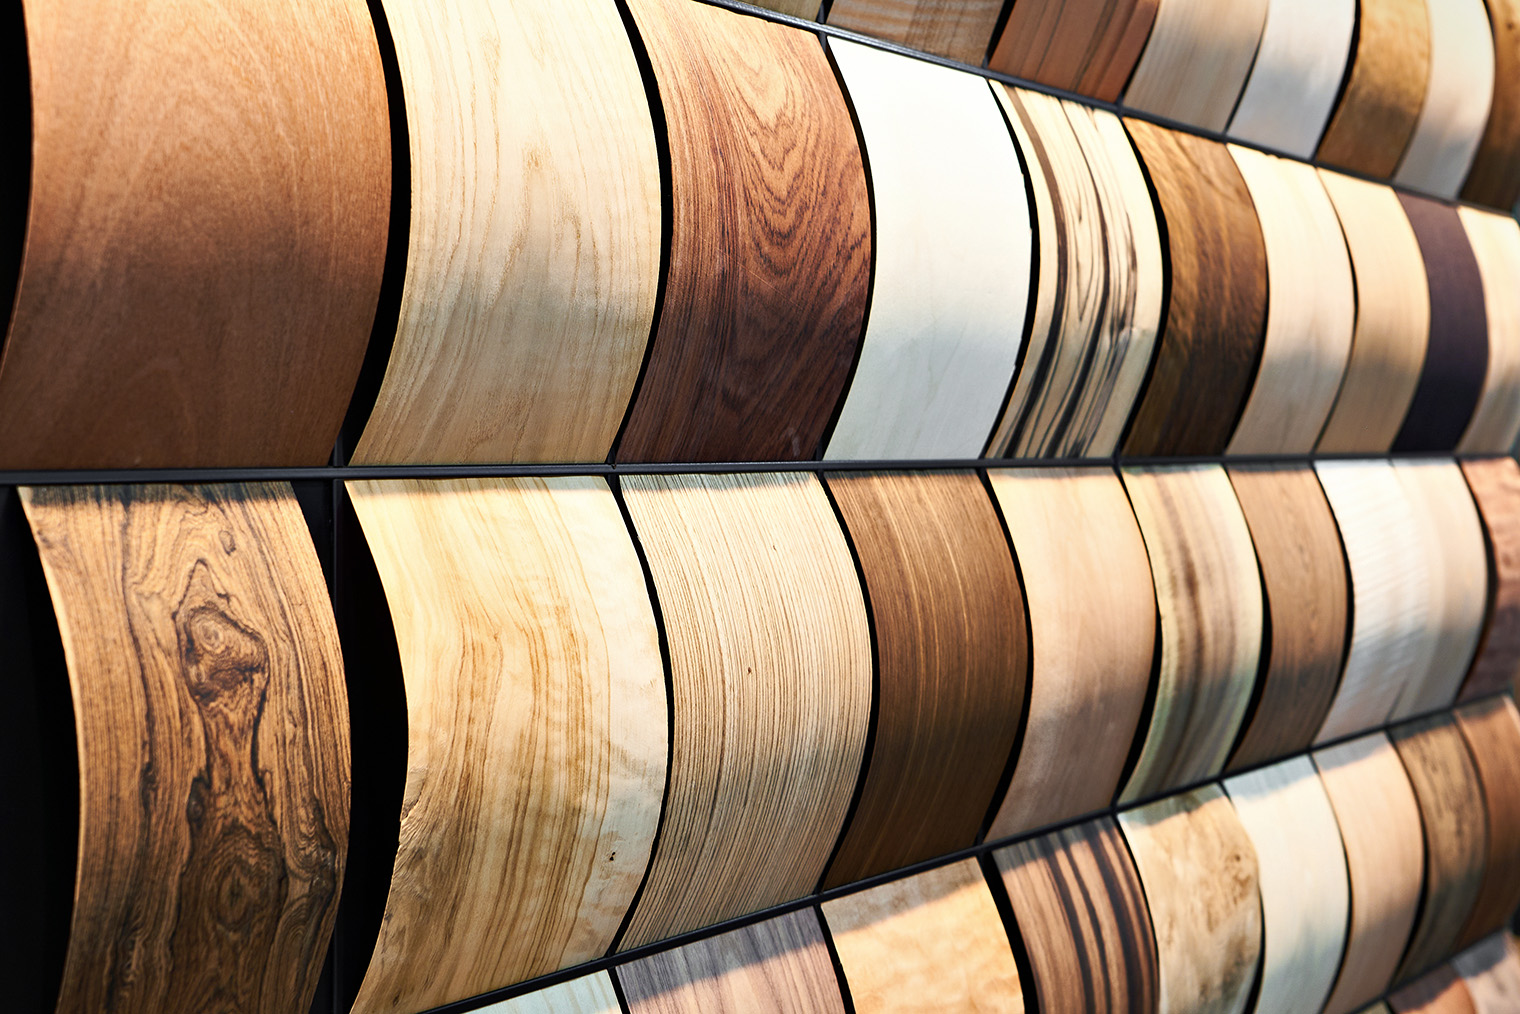 Шпон дает естественную текстуру ценных пород древесины. Внешне неспециалист вряд ли отличит от цельного массива. Фотография: sergeyryzhov / iStock